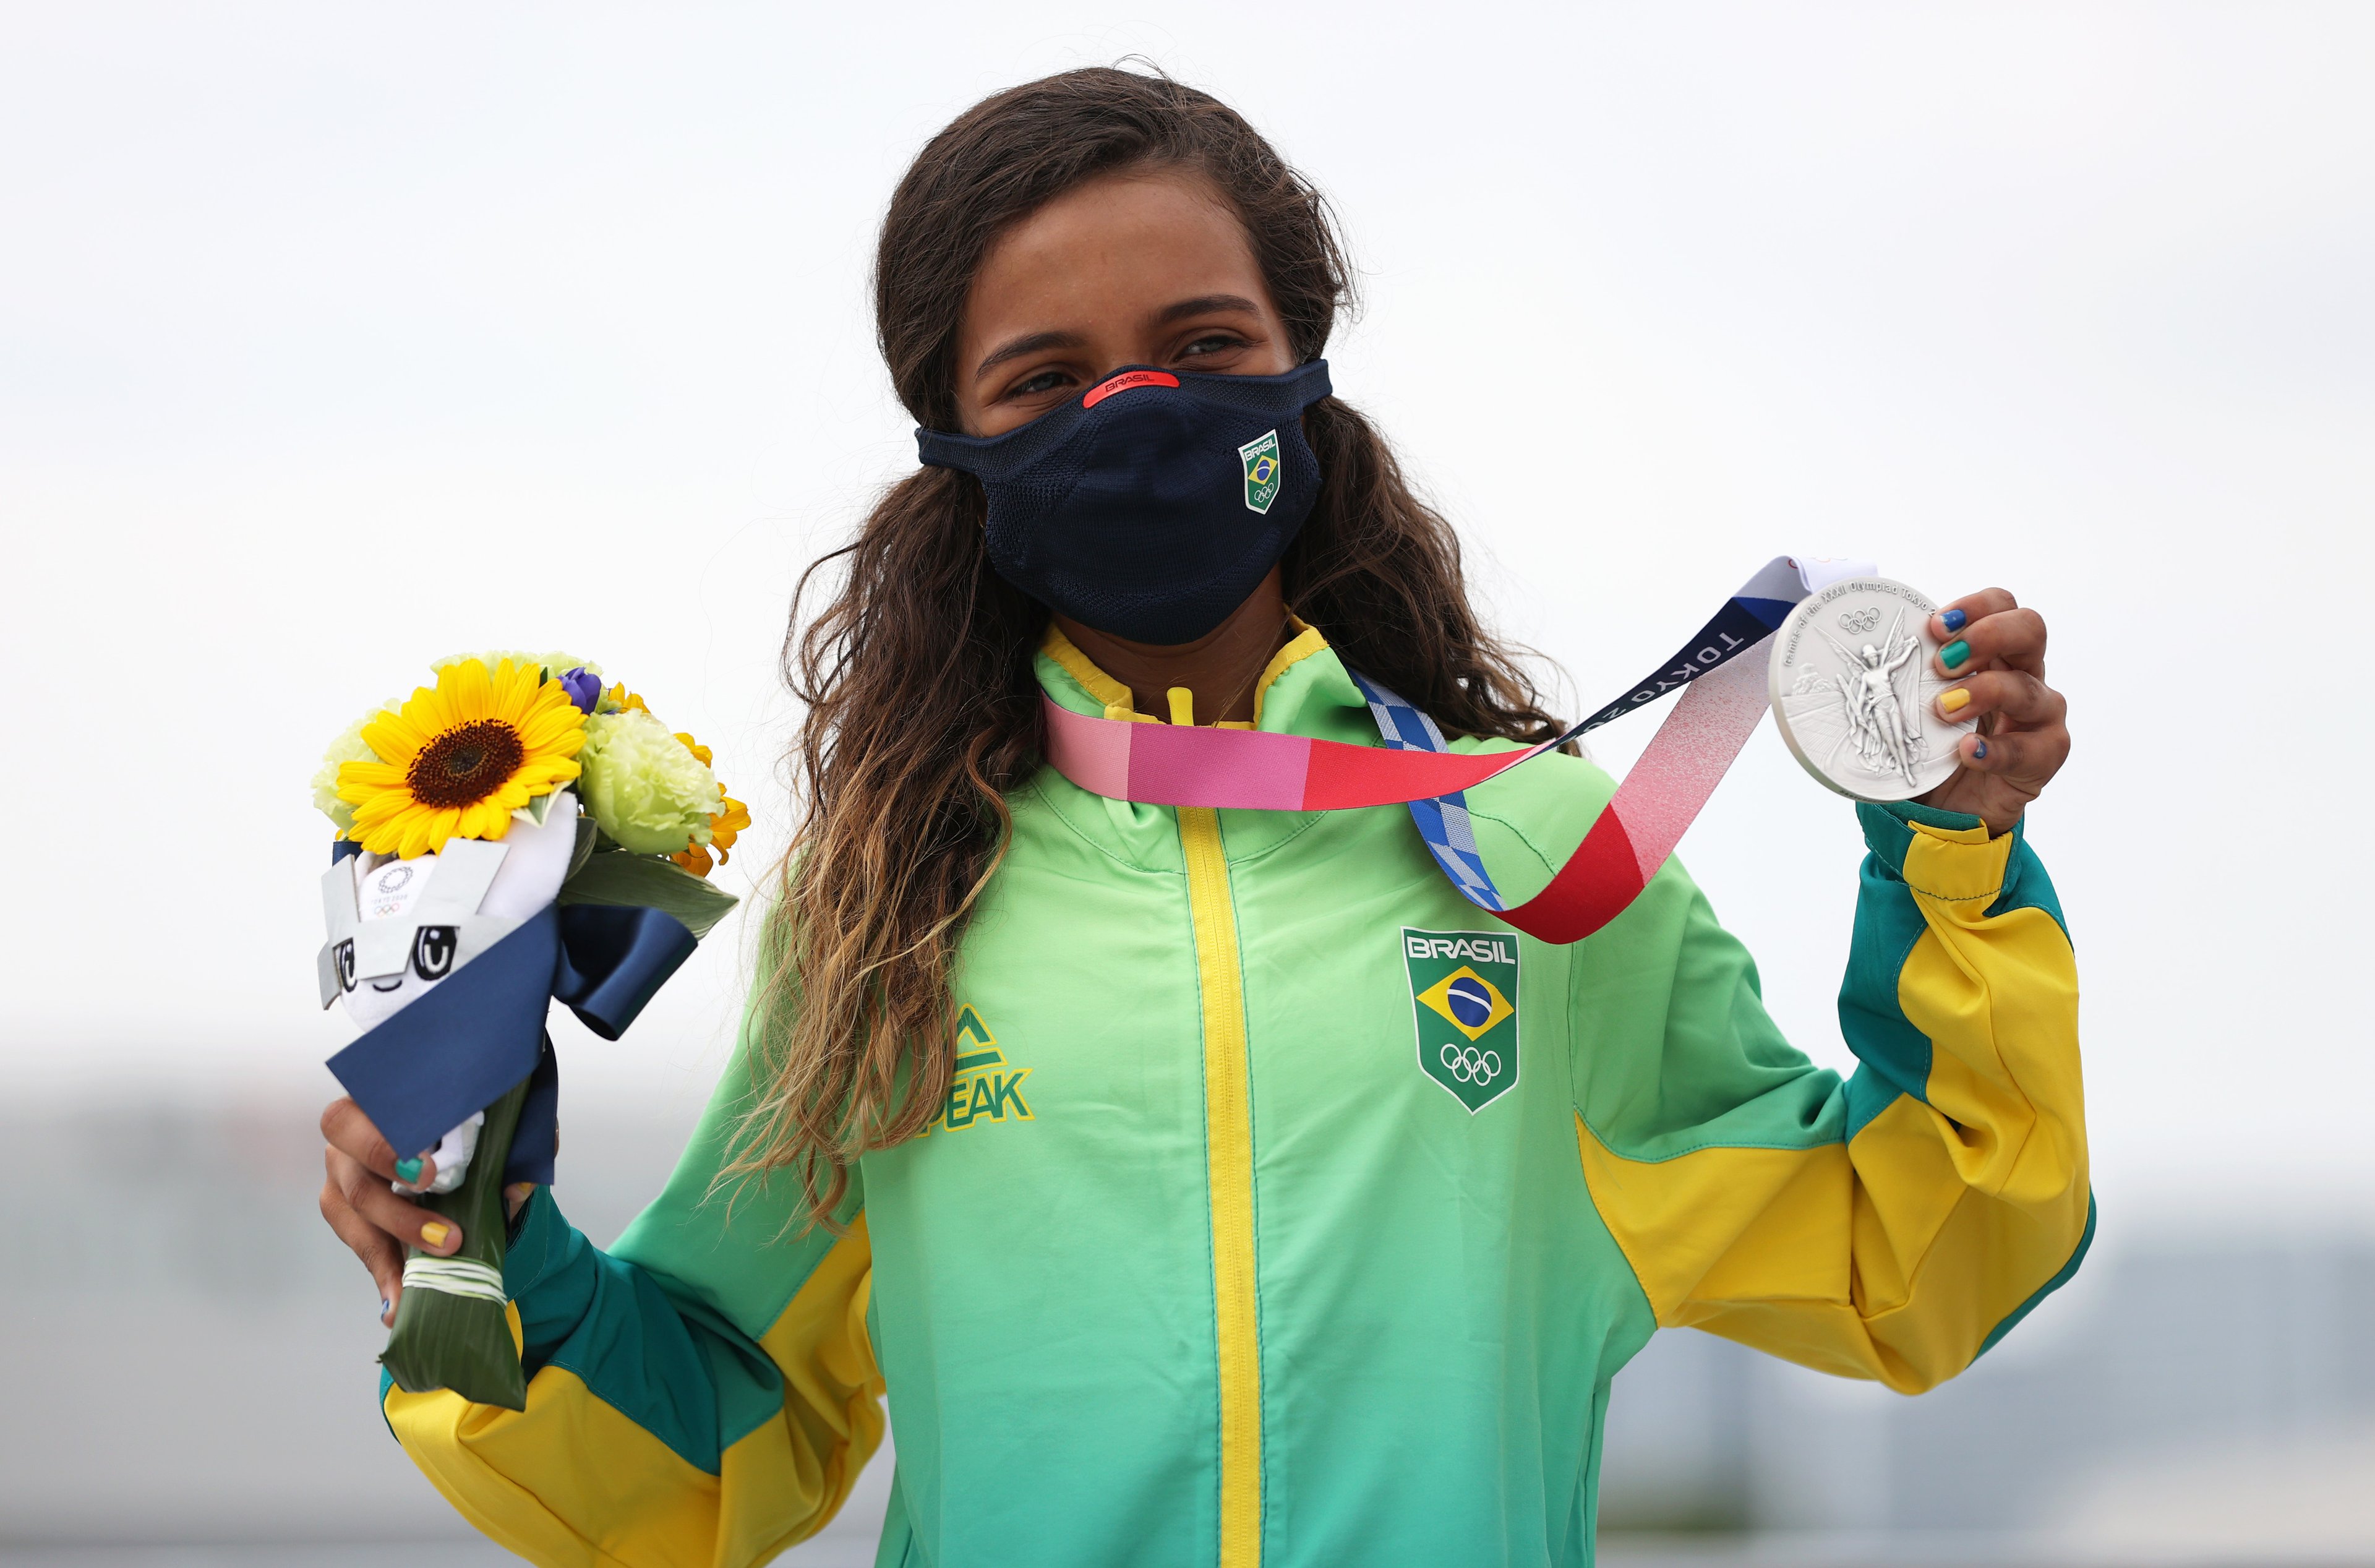 Rayssa Leal, do Time Brasil, posa com sua medalha de prata durante a cerimônia de premiação da Final Feminina de Street no terceiro dia dos Jogos Olímpicos de Tóquio 2020 no Ariake Urban Sports Park em 26 de julho de 2021 em Tóquio, Japão.